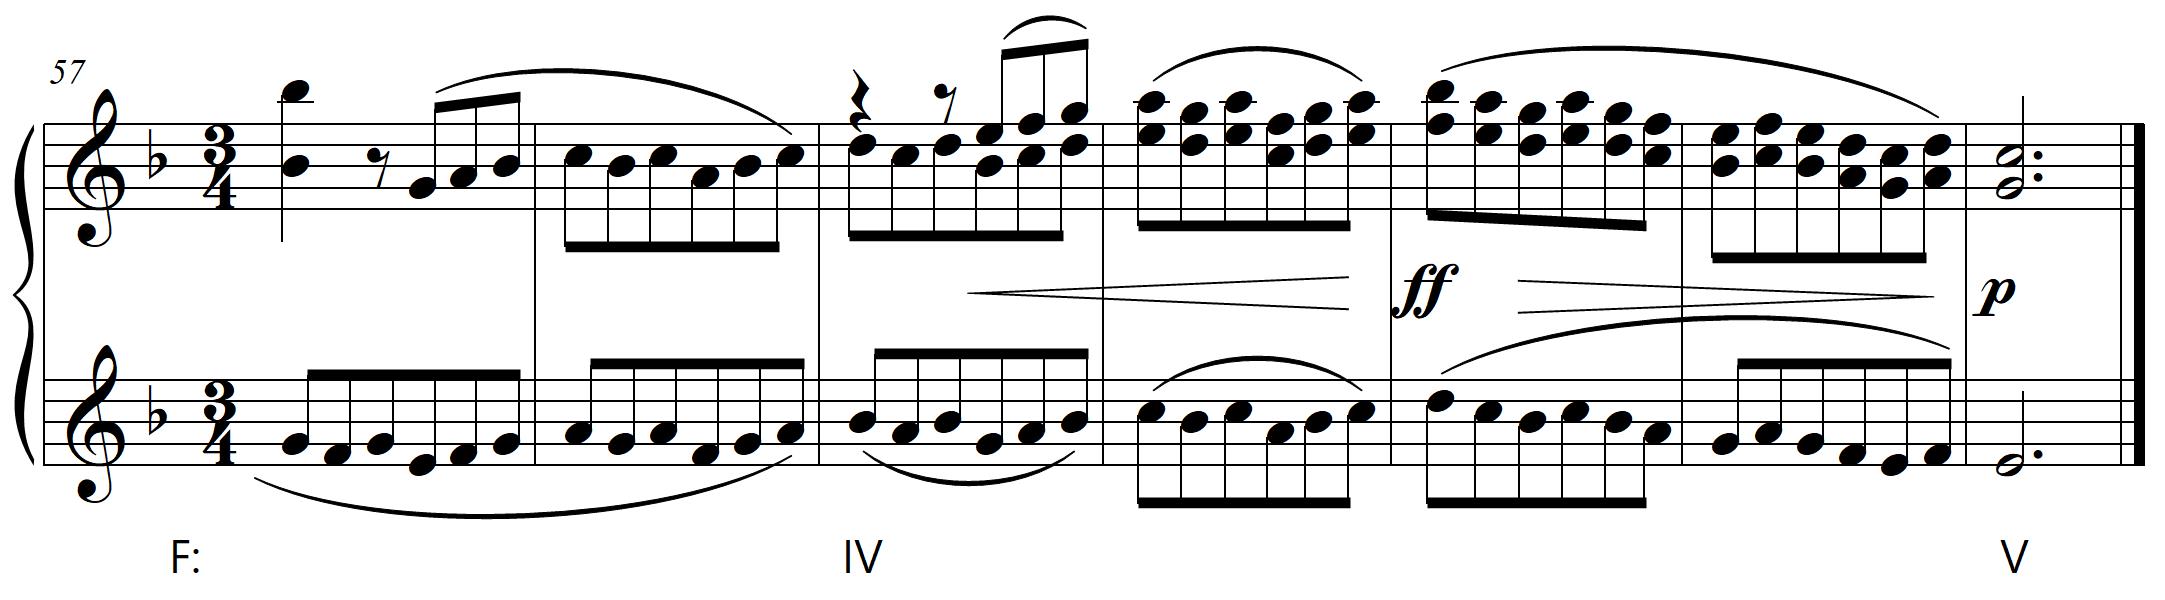 Beethoven Op. 2 No. 2 excerpt